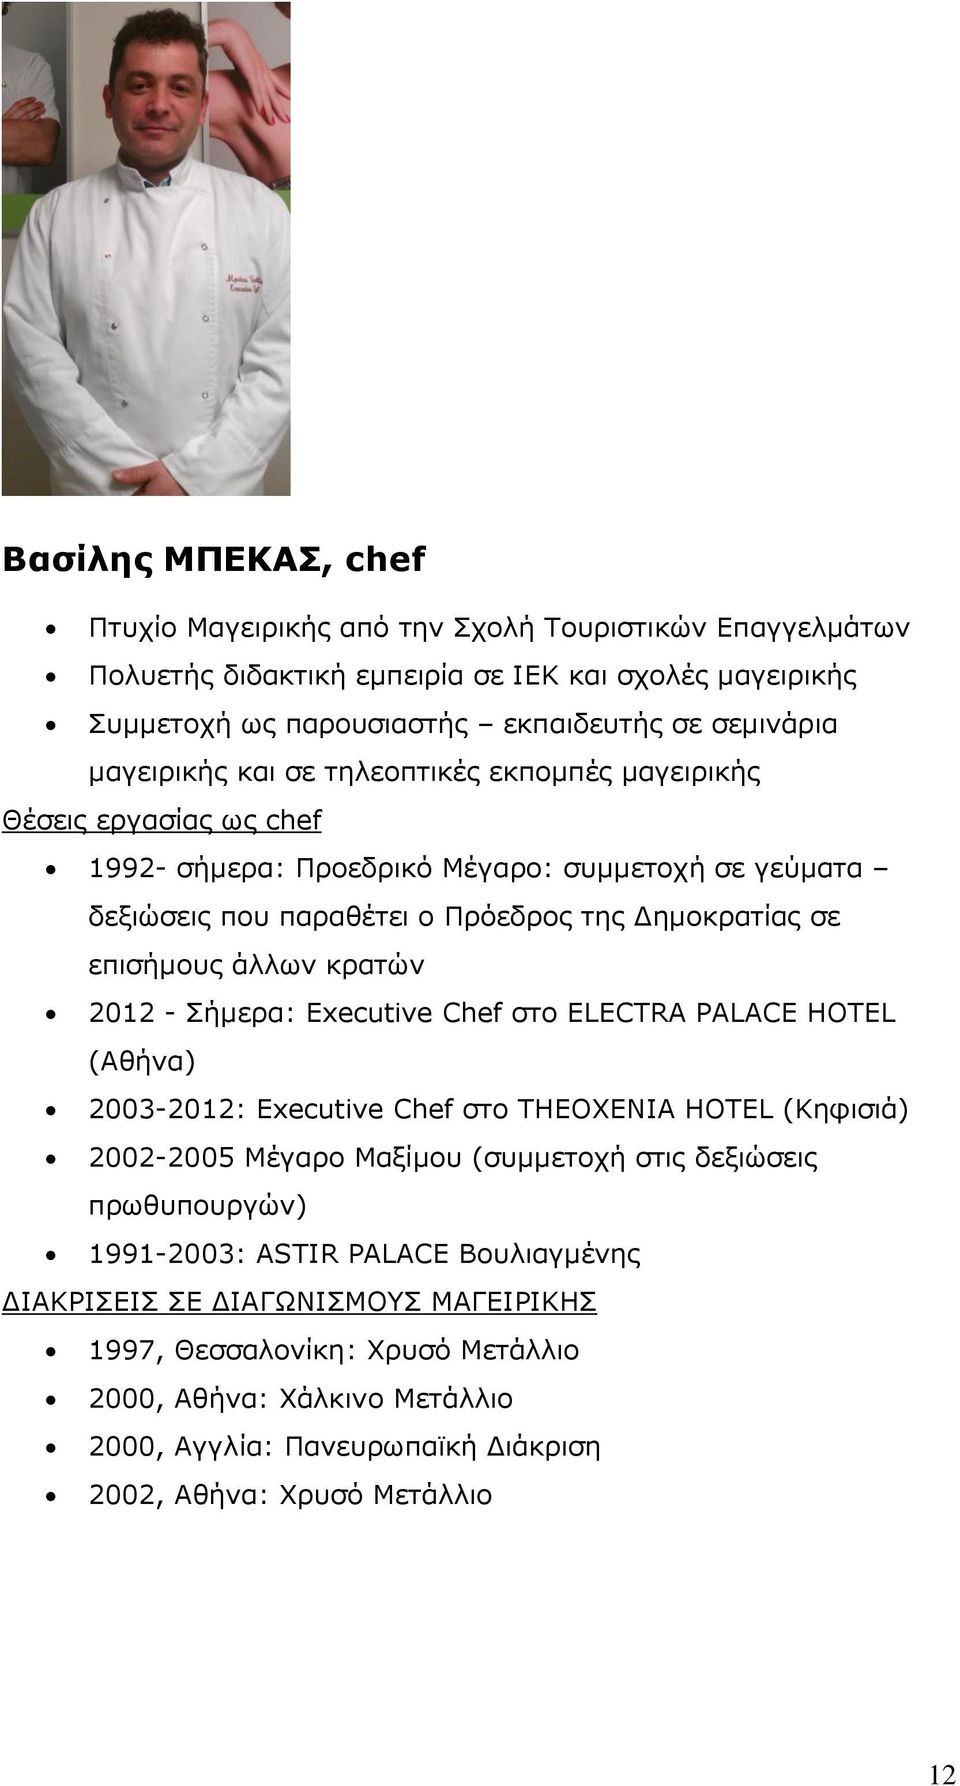 άιισλ θξαηψλ 2012 - Πήκεξα: Executive Chef ζην ELECTRA PALACE HOTEL (Αζήλα) 2003-2012: Executive Chef ζην THEOXENIA HOTEL (Θεθηζηά) 2002-2005 Κέγαξν Καμίκνπ (ζπκκεηνρή ζηηο δεμηψζεηο